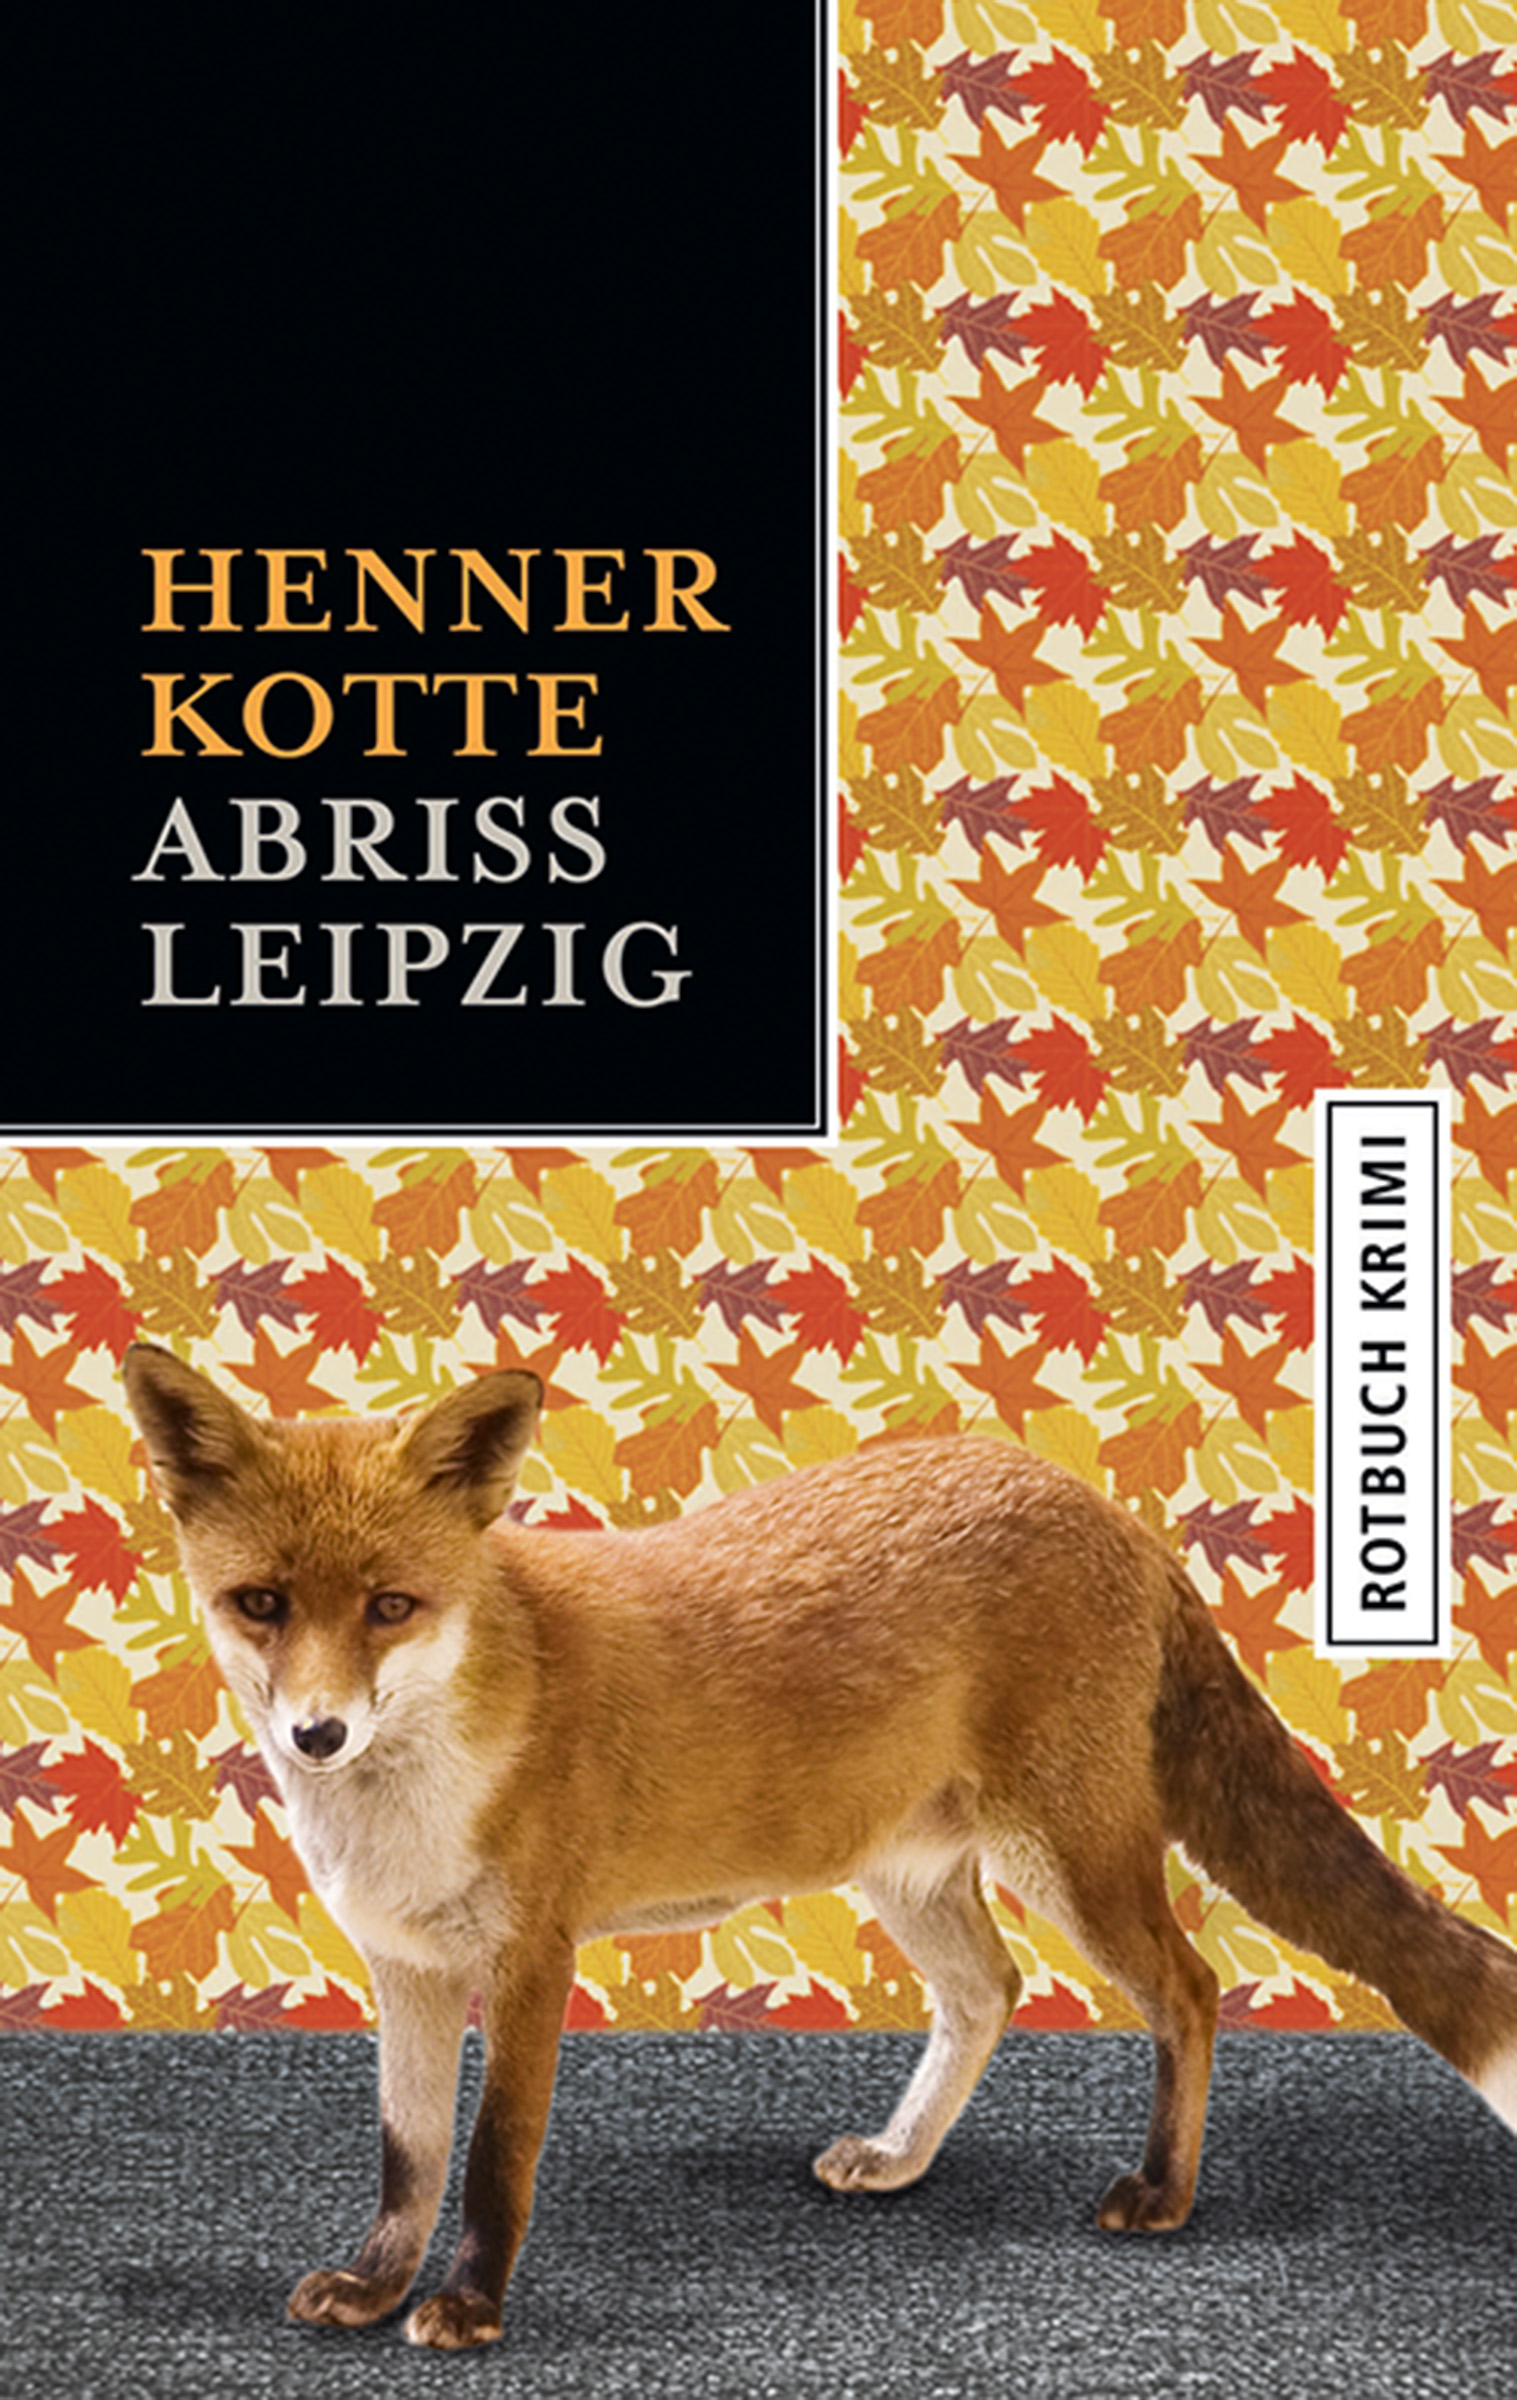 Henner Kotte Abriss Leipzig